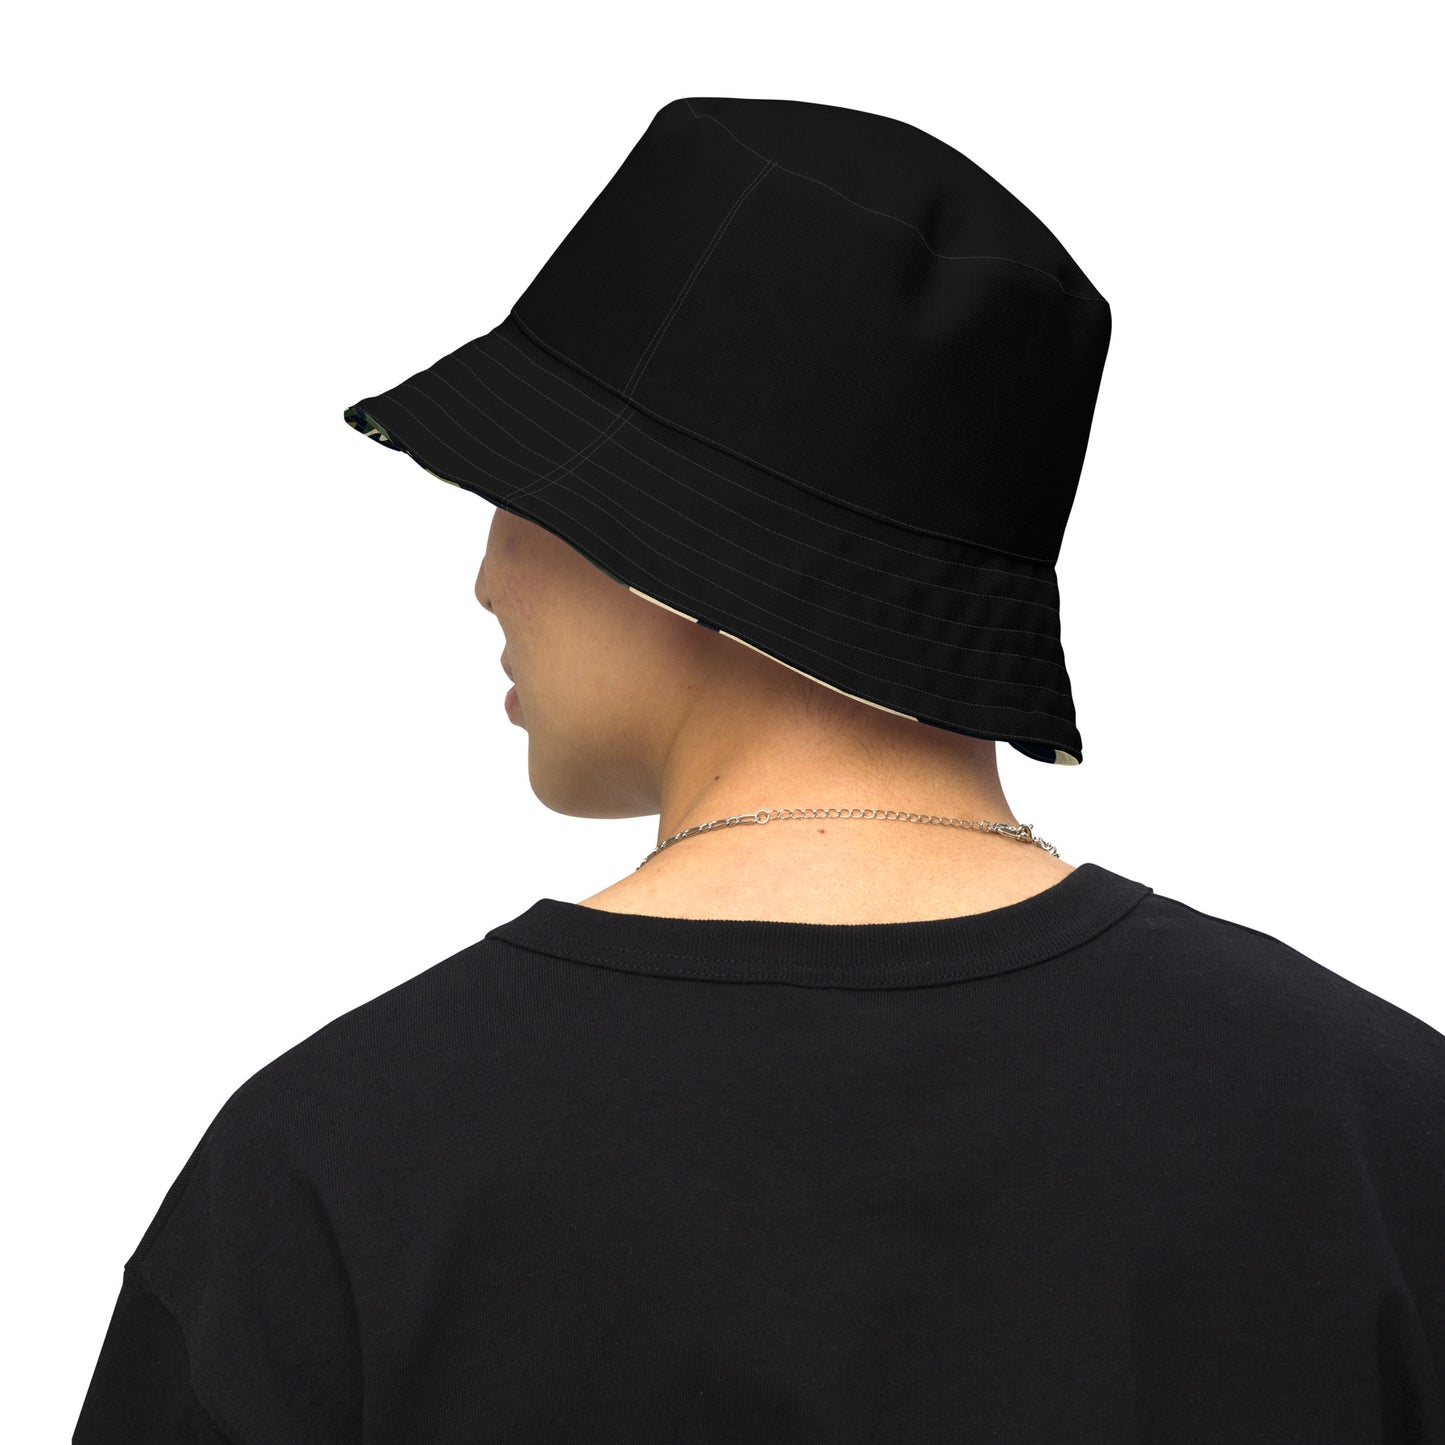 Urban Flip: The StudioRich Reversible Bucket Hat